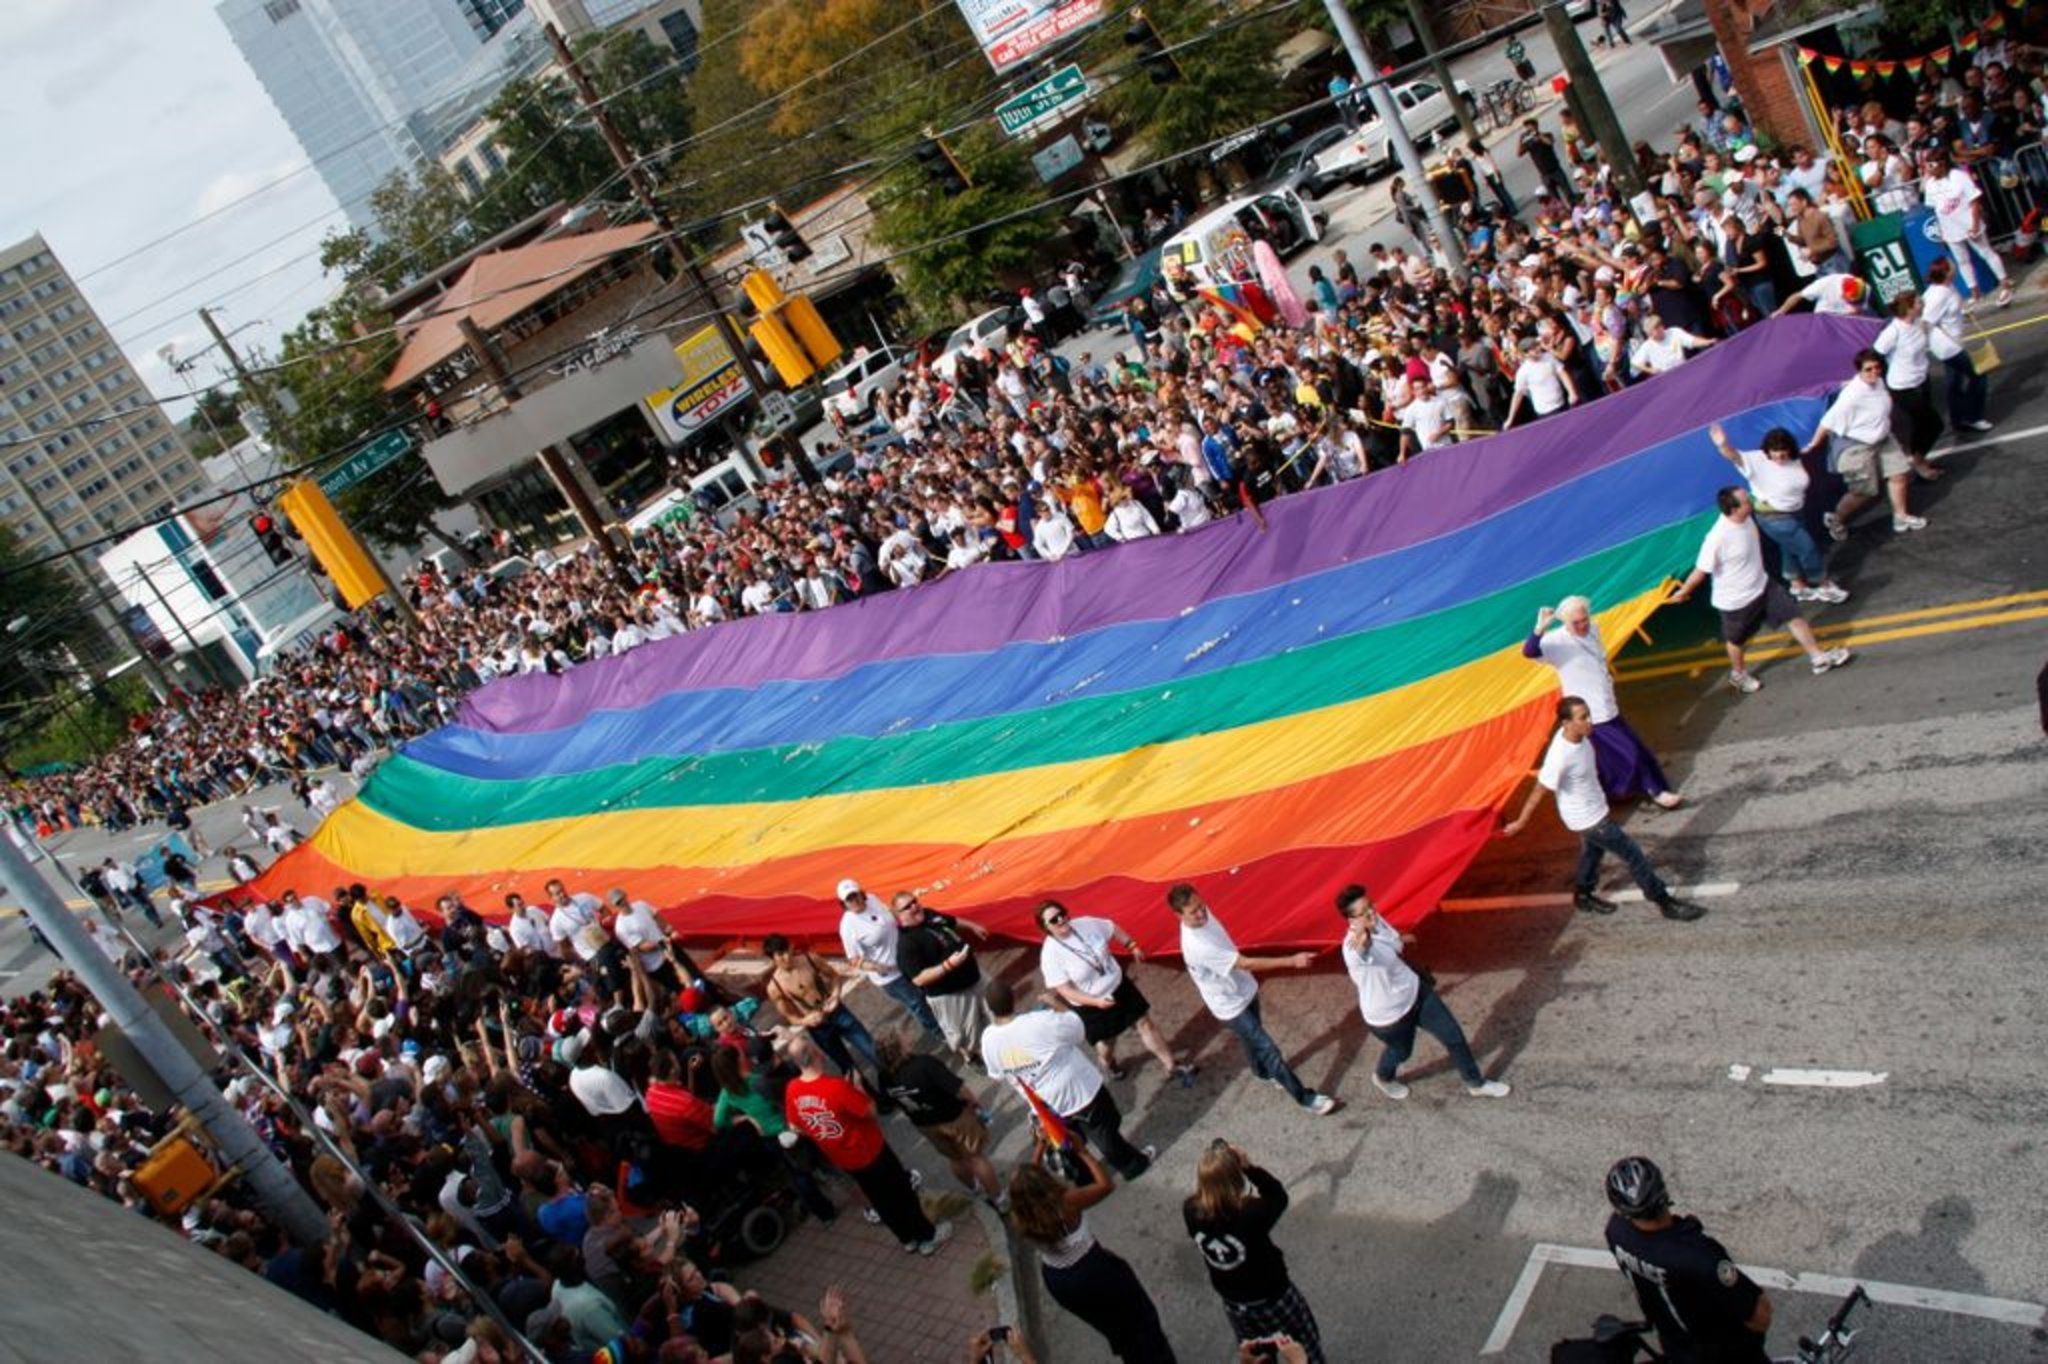 when is the gay pride parade in atlanta 2015